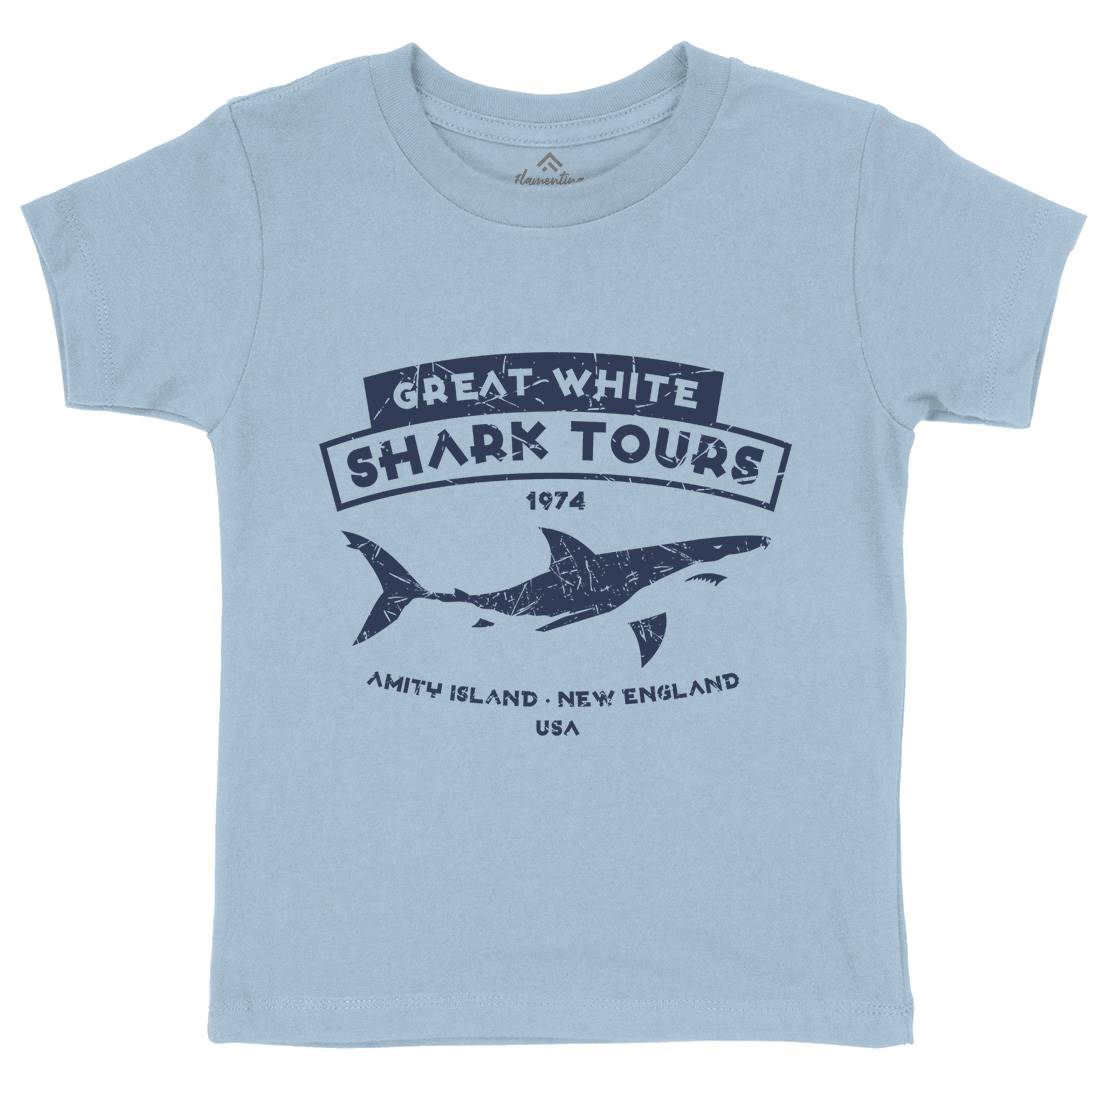 Great White Shark Tours Kids Crew Neck T-Shirt Navy D348